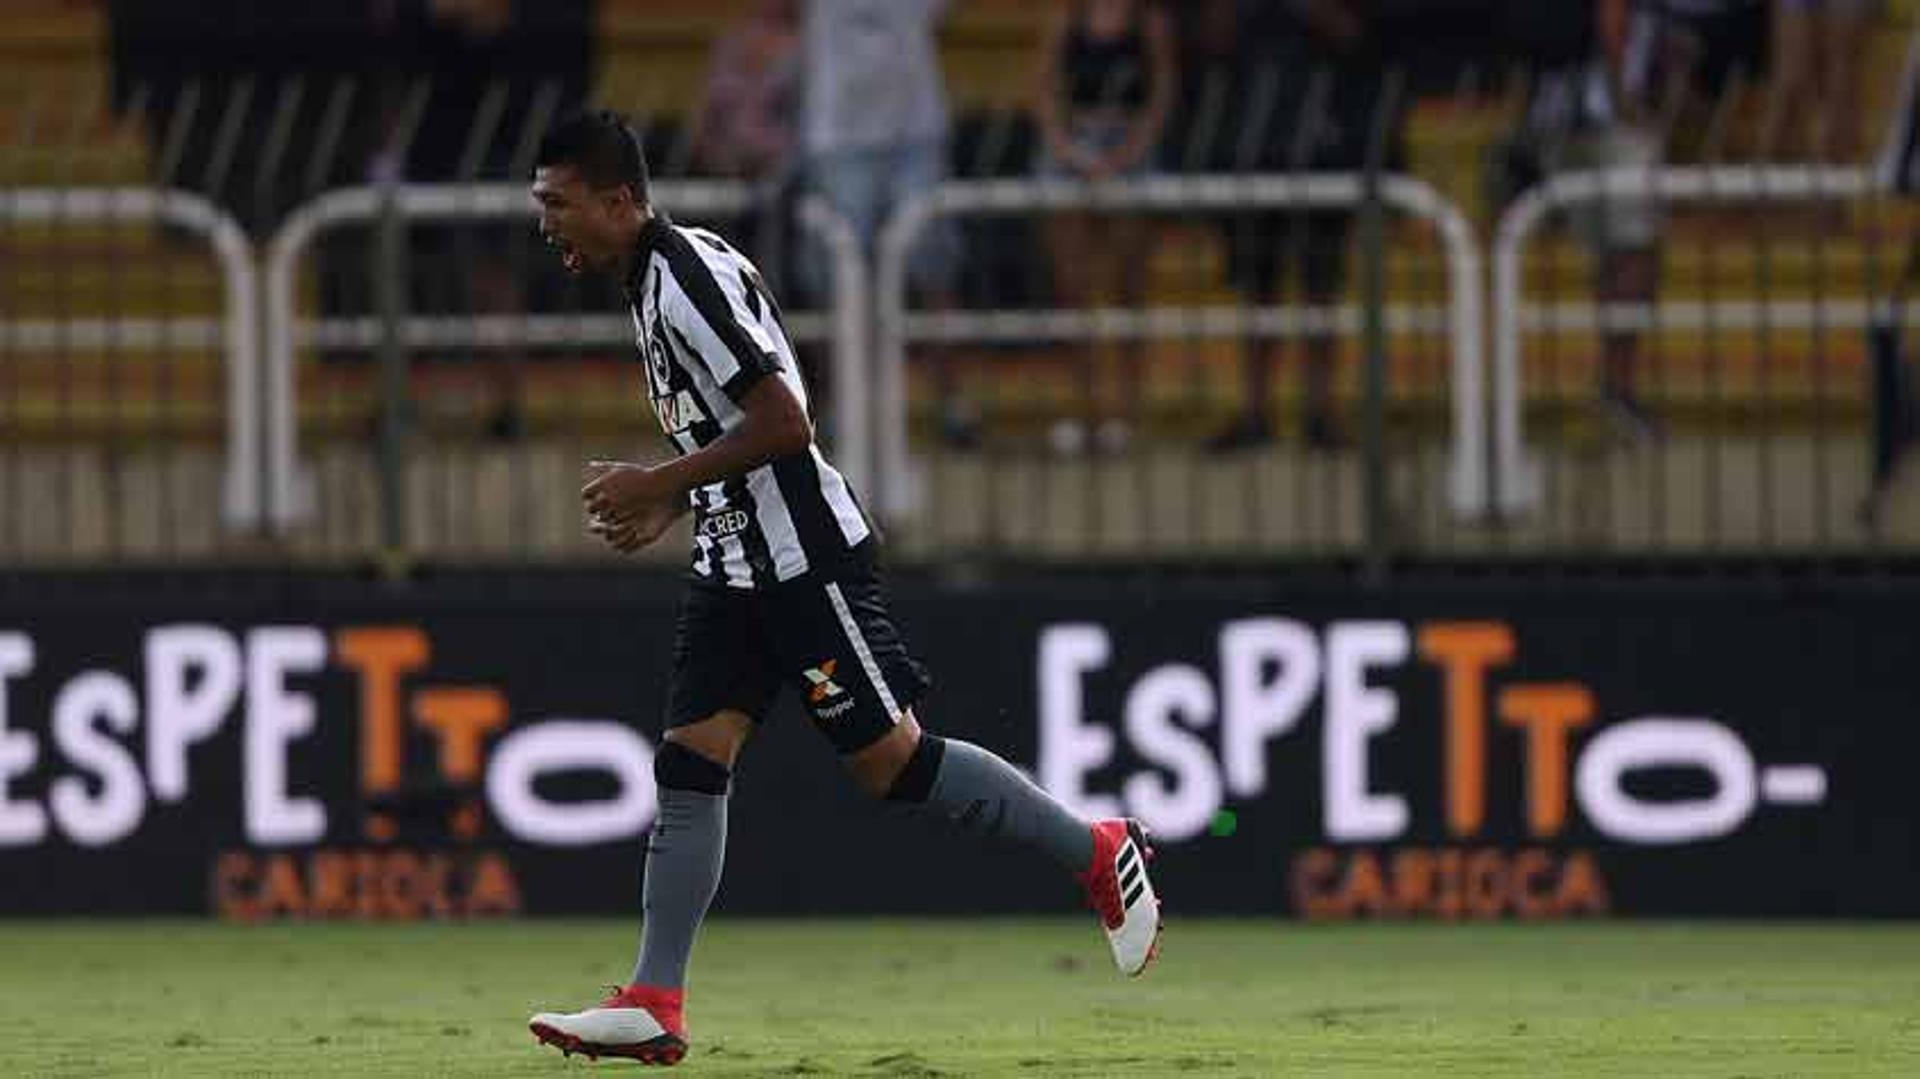 Kieza fez o gol do Botafogo na derrota para o Flamengo no último sábado. Confira a seguir a galeria LANCE!